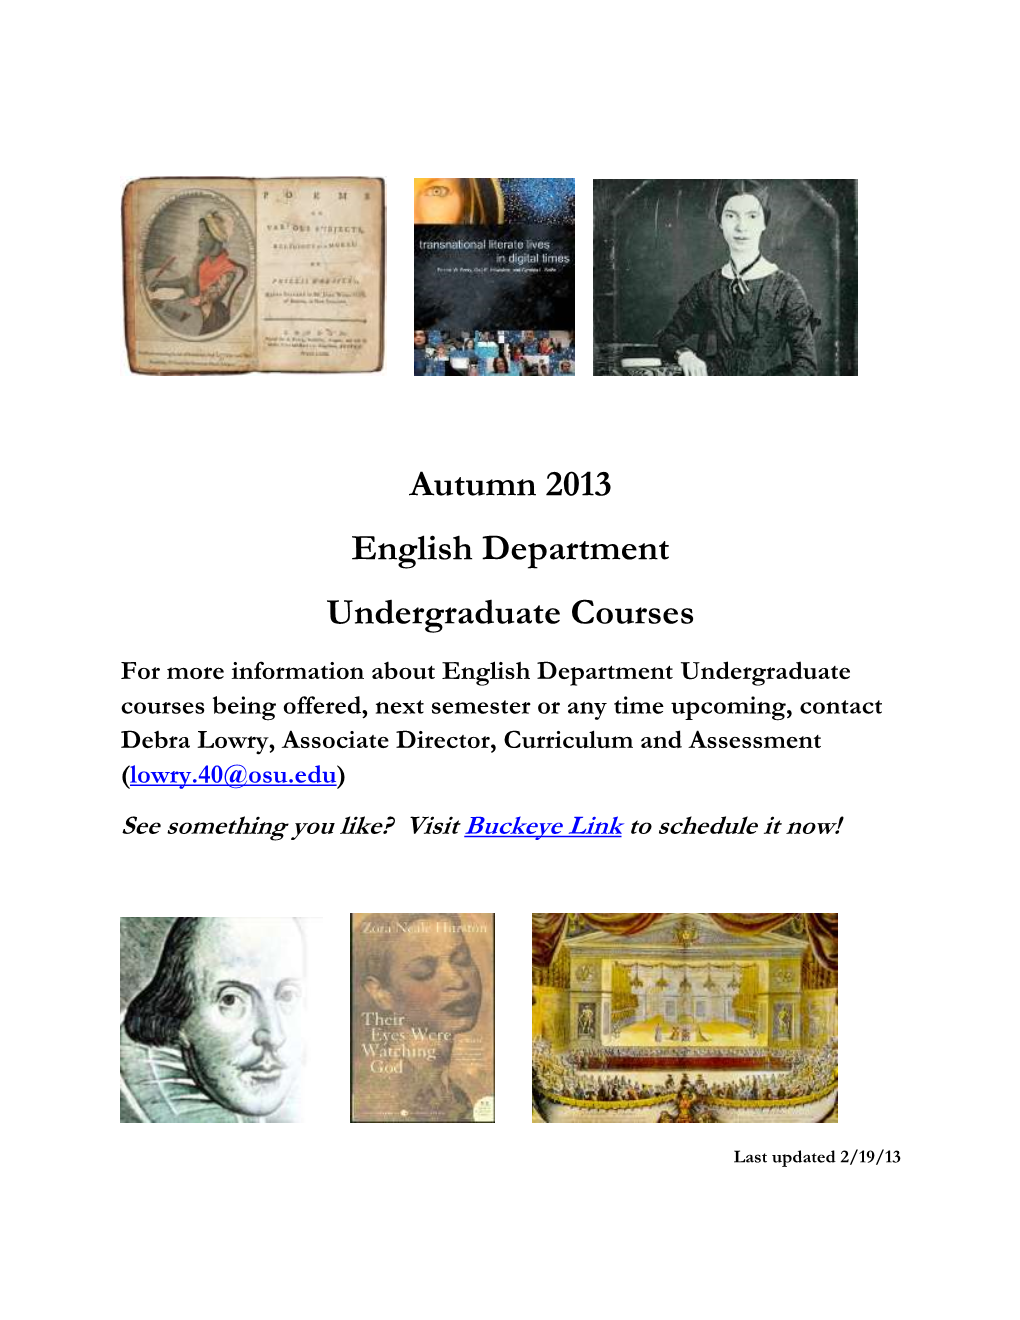 Autumn 2013 English Department Undergraduate Courses